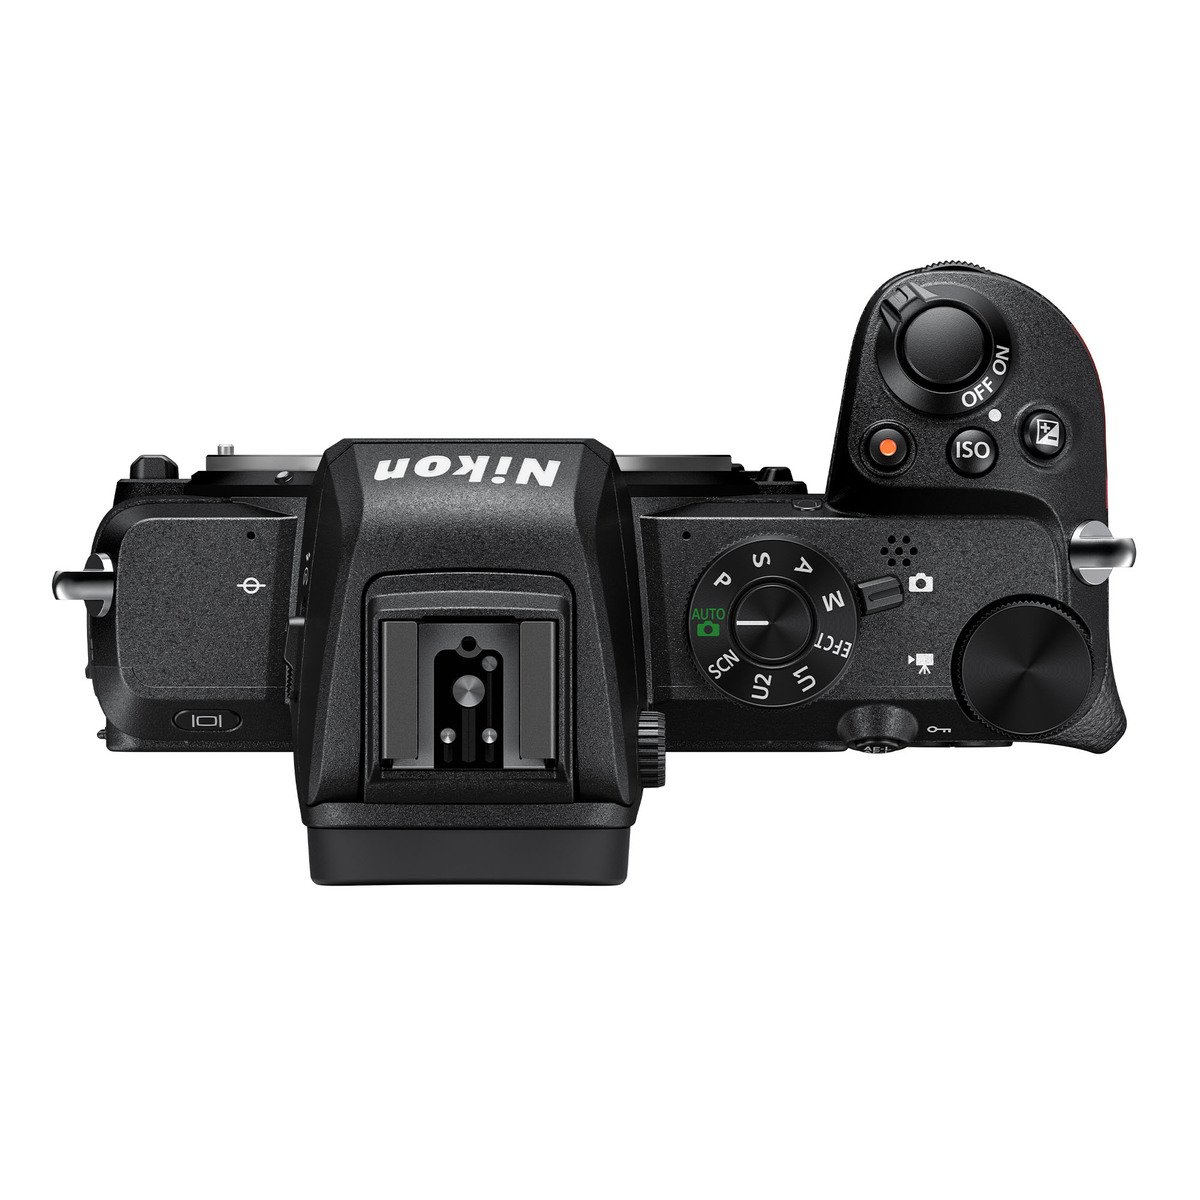 كاميرا ديجيتال نيكون Z50  بدون مرآه  16 - 50 مم  20.9 ميجا بكسل